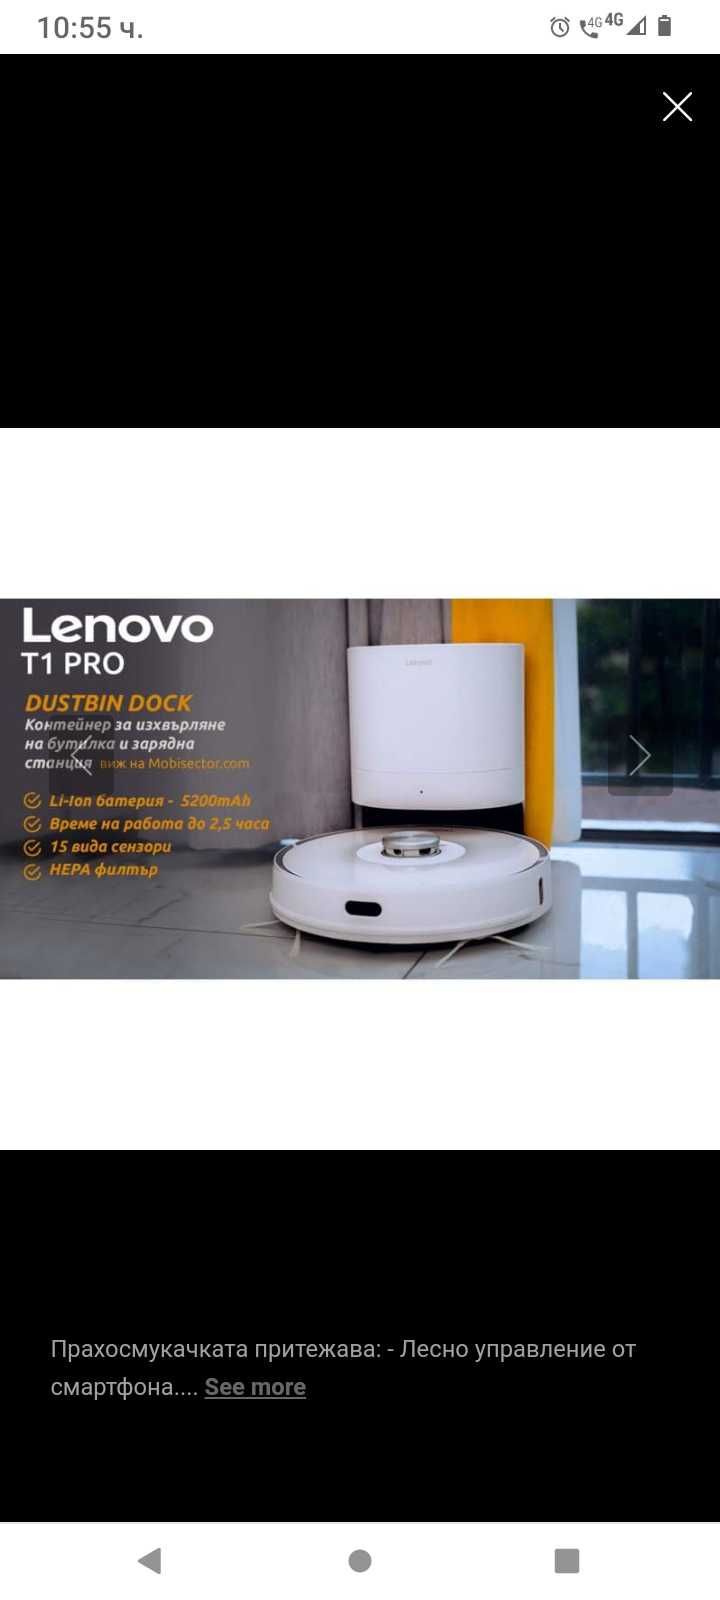 Lenovo robot Cleaner Pro T1s